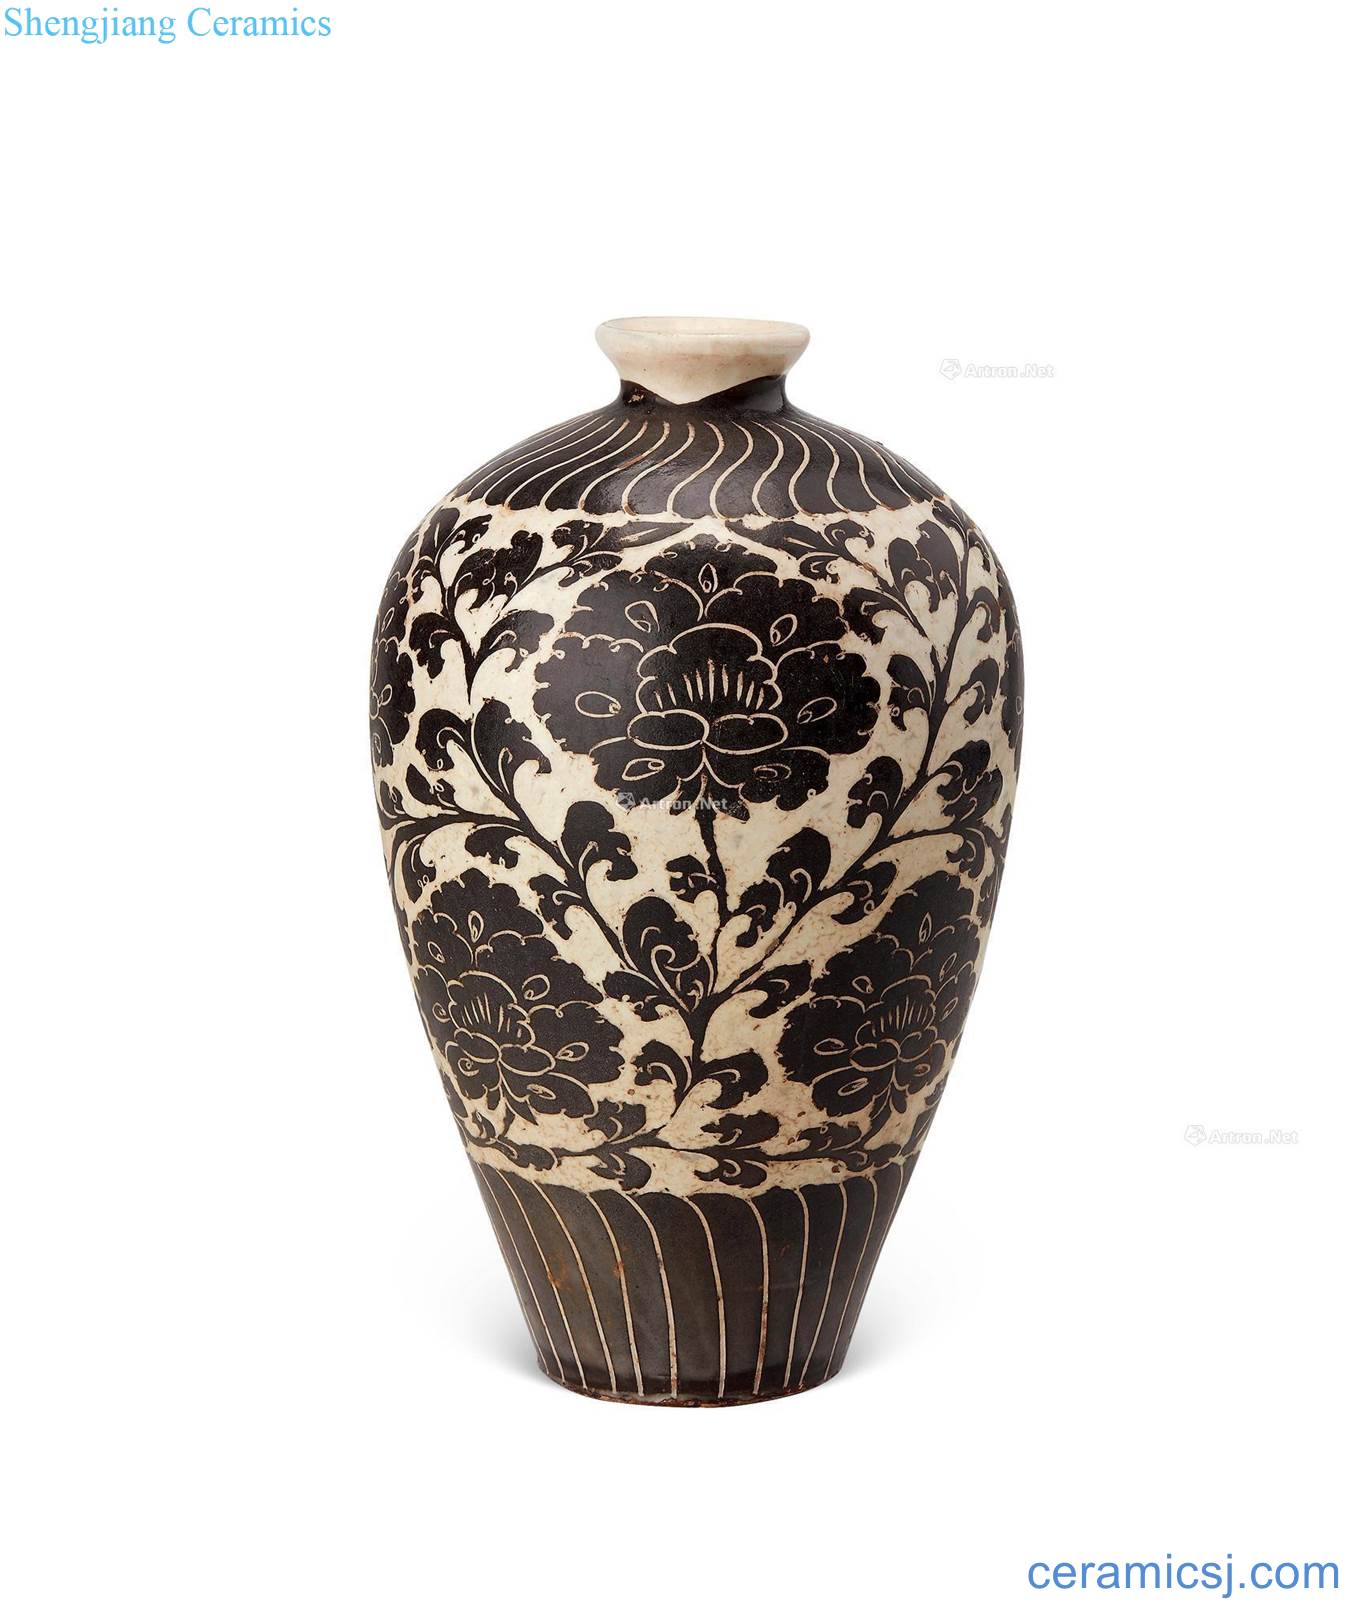 yuan Magnetic state kiln white bottle carved flowers blackberries